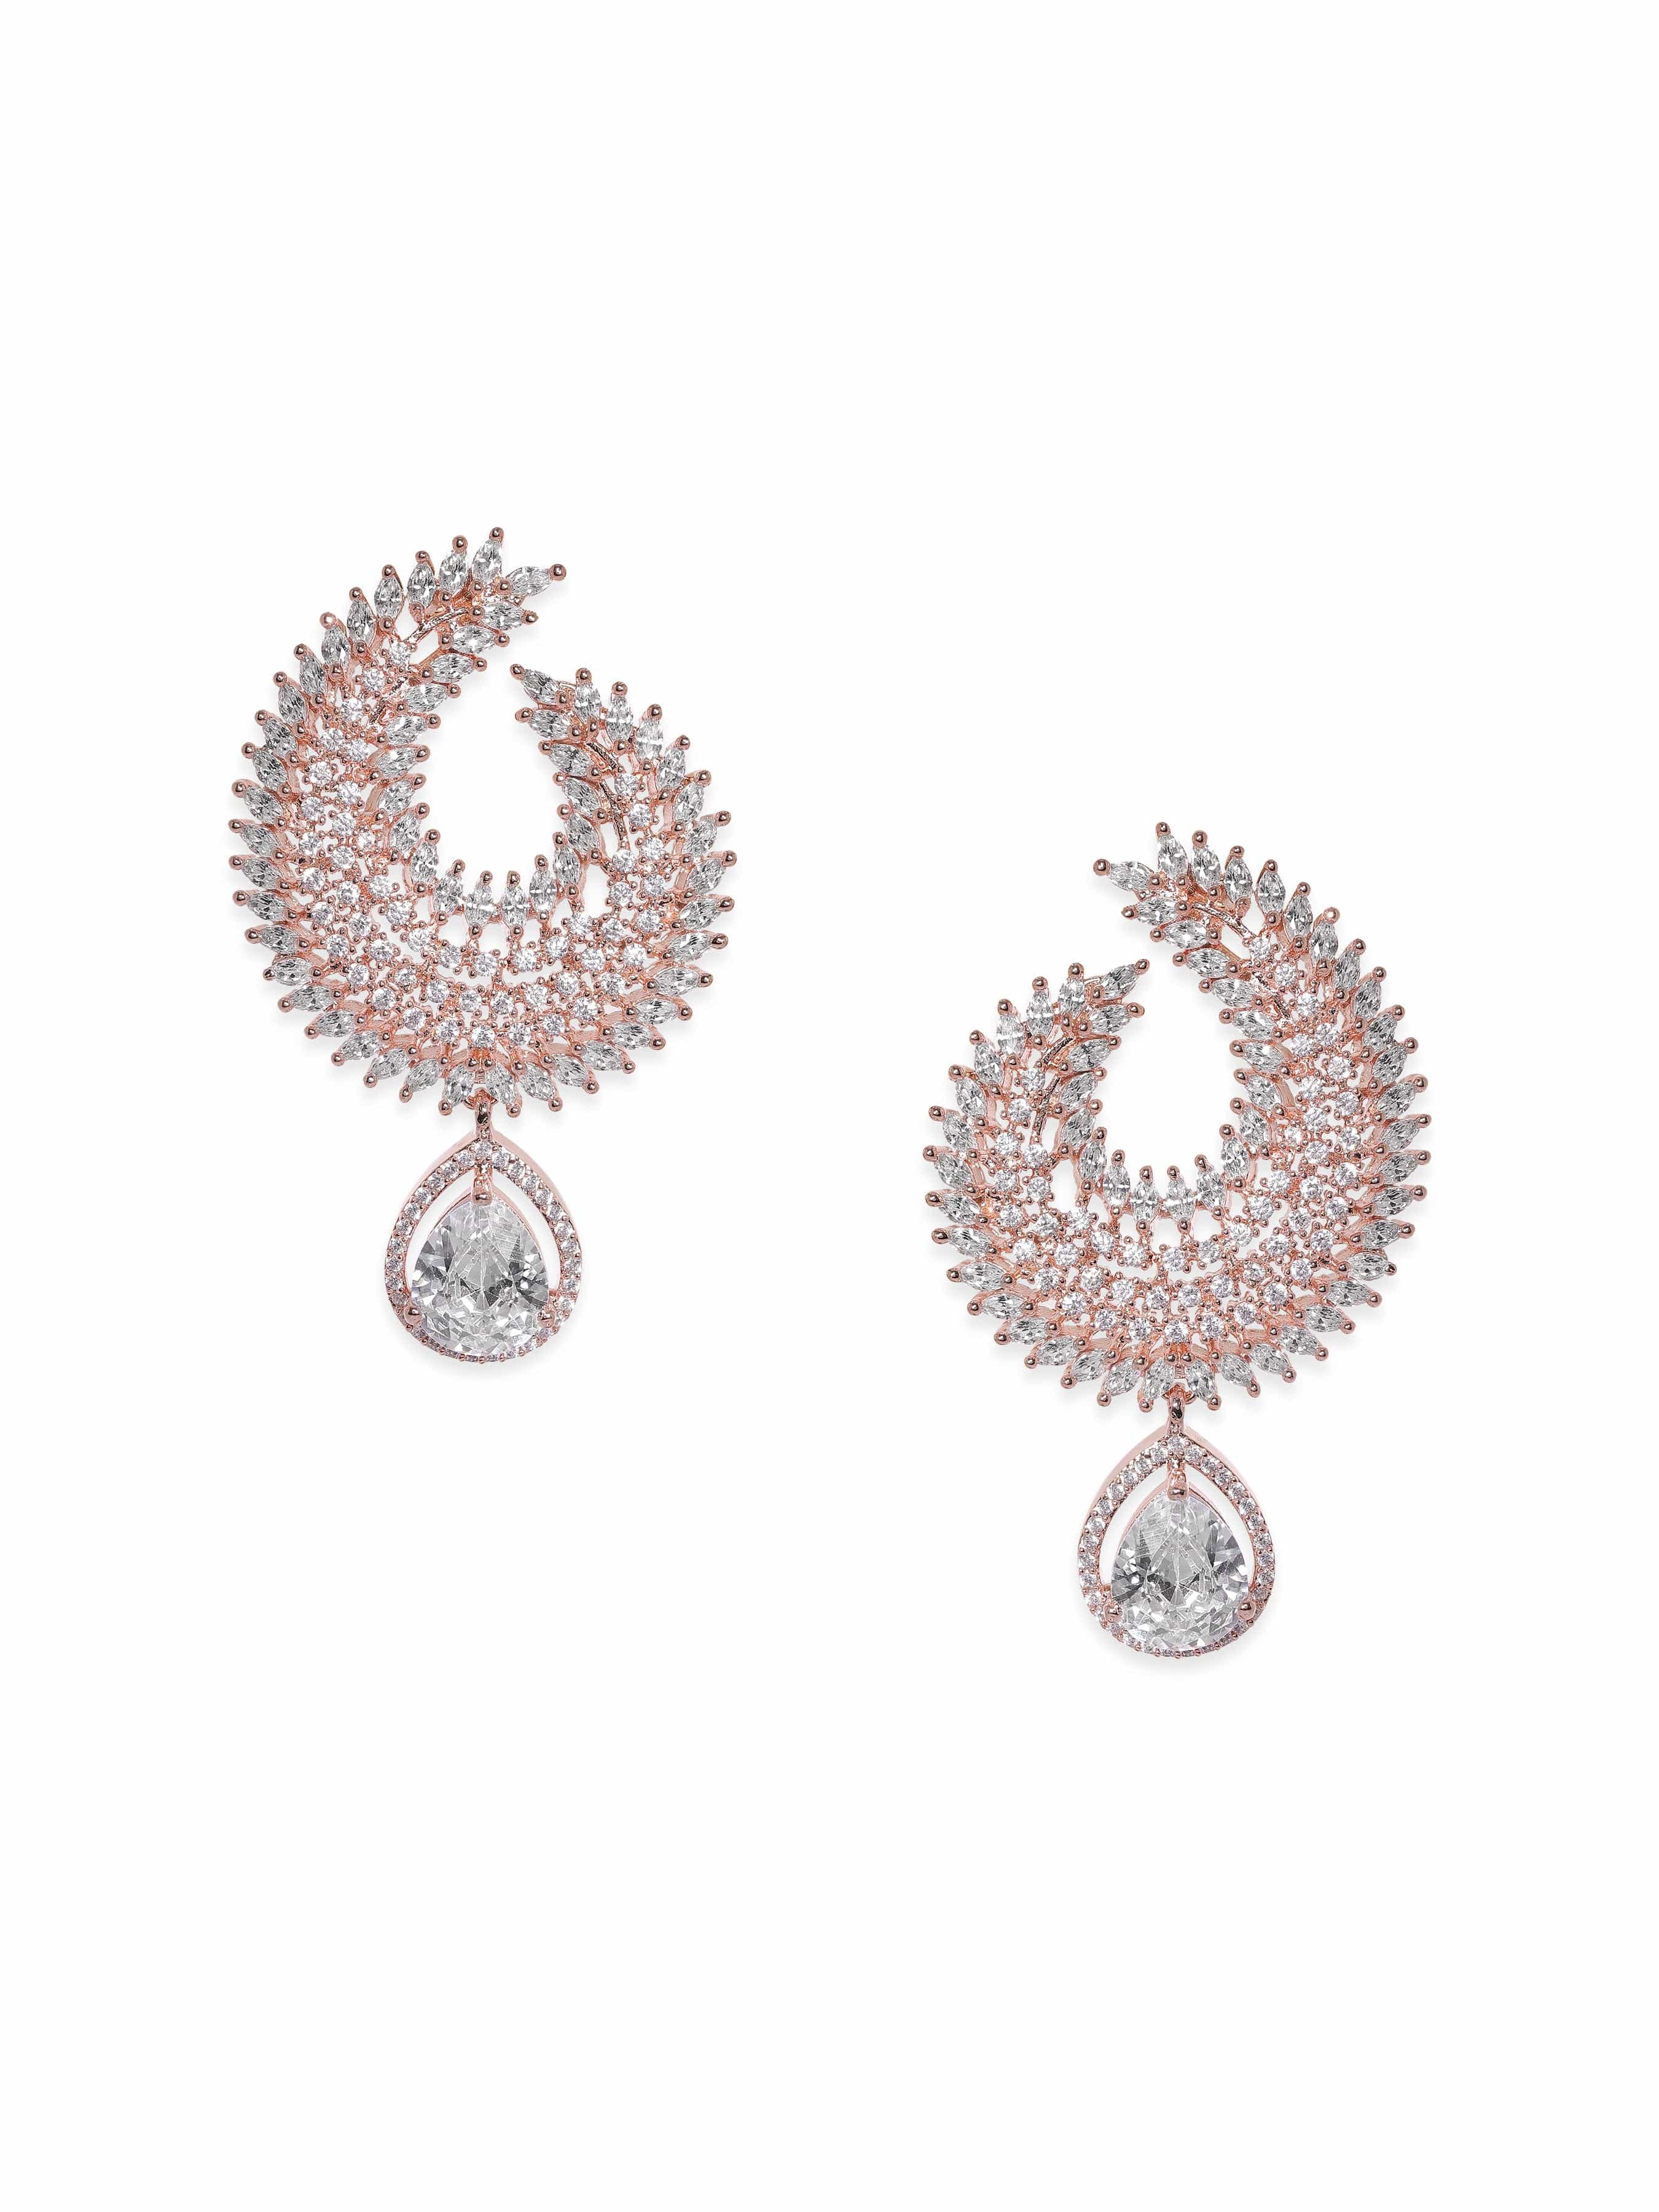 18K Rose Gold Diamond Stud Earrings True Love Gift Fashion Diamond Earrings  - China Diamond Earrings and Diamond Stud Earrings price | Made-in-China.com